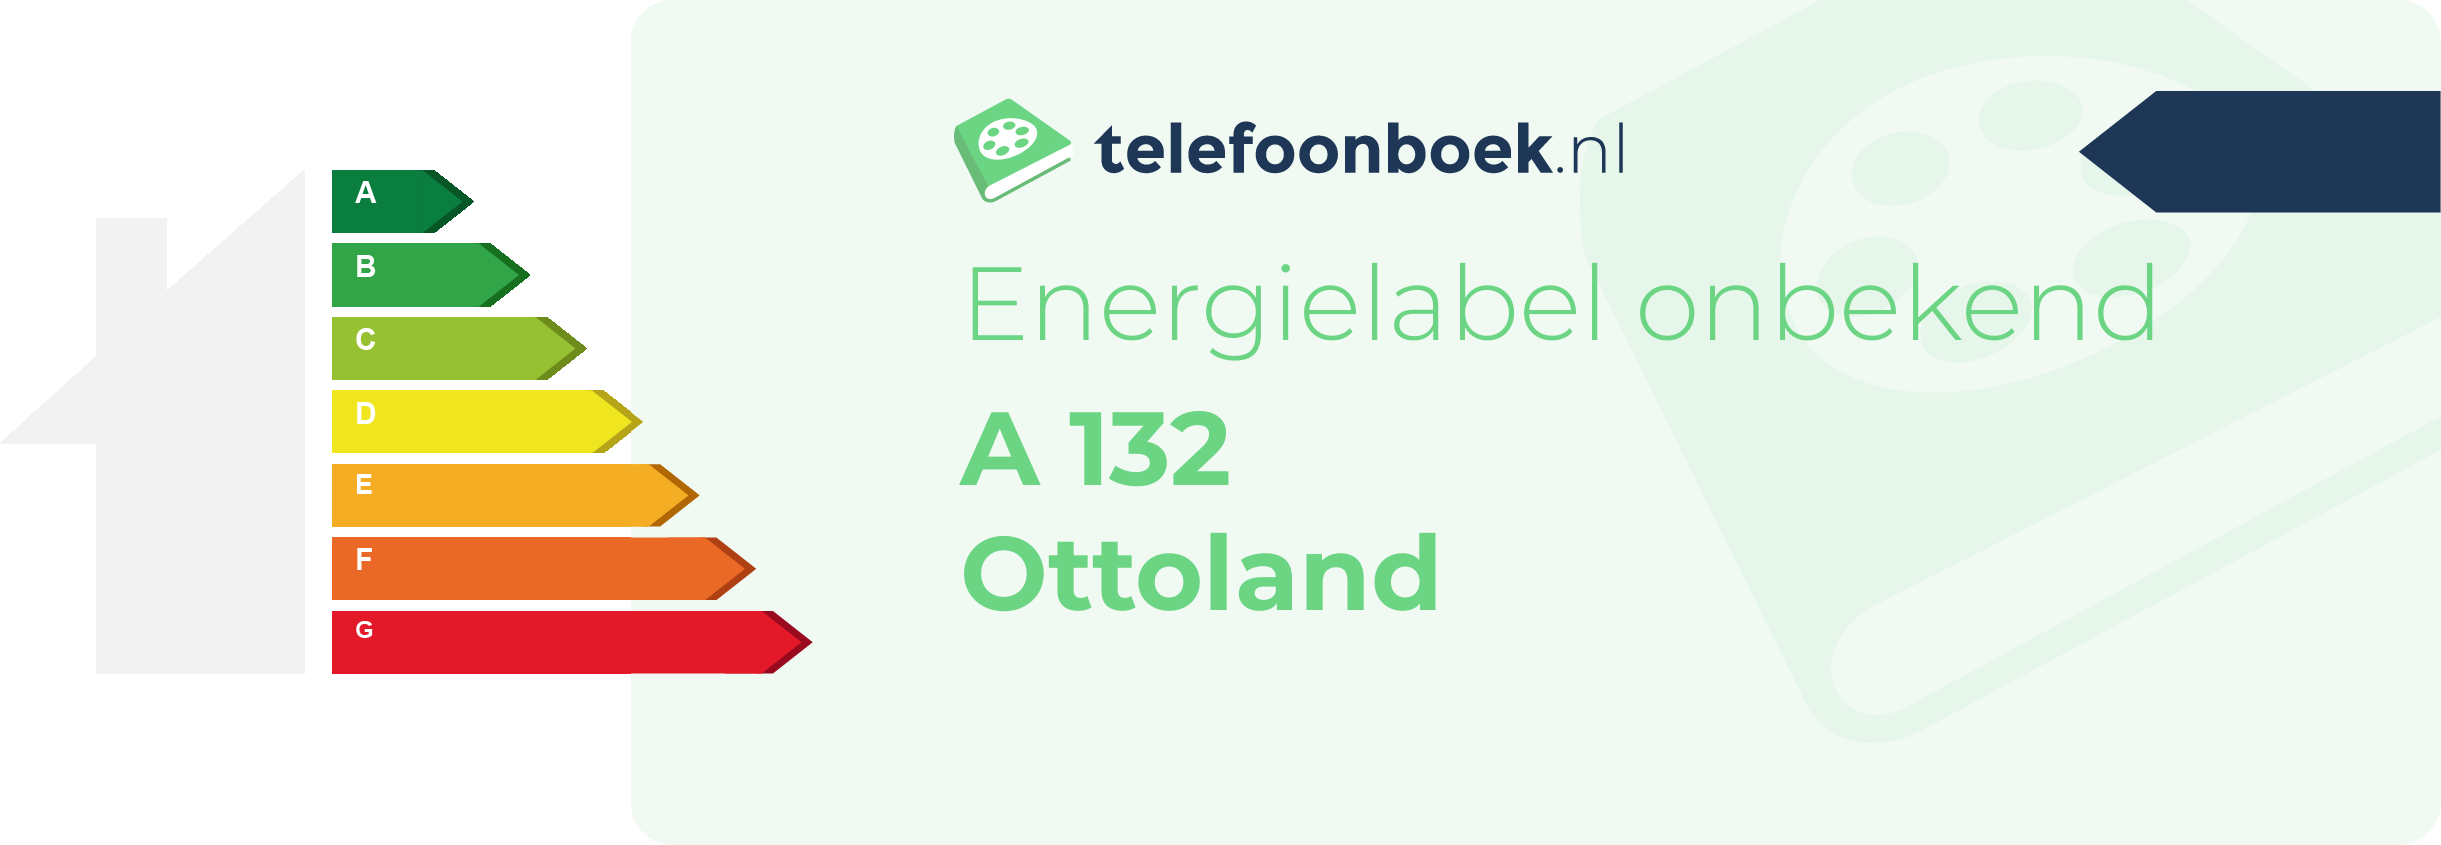 Energielabel A 132 Ottoland